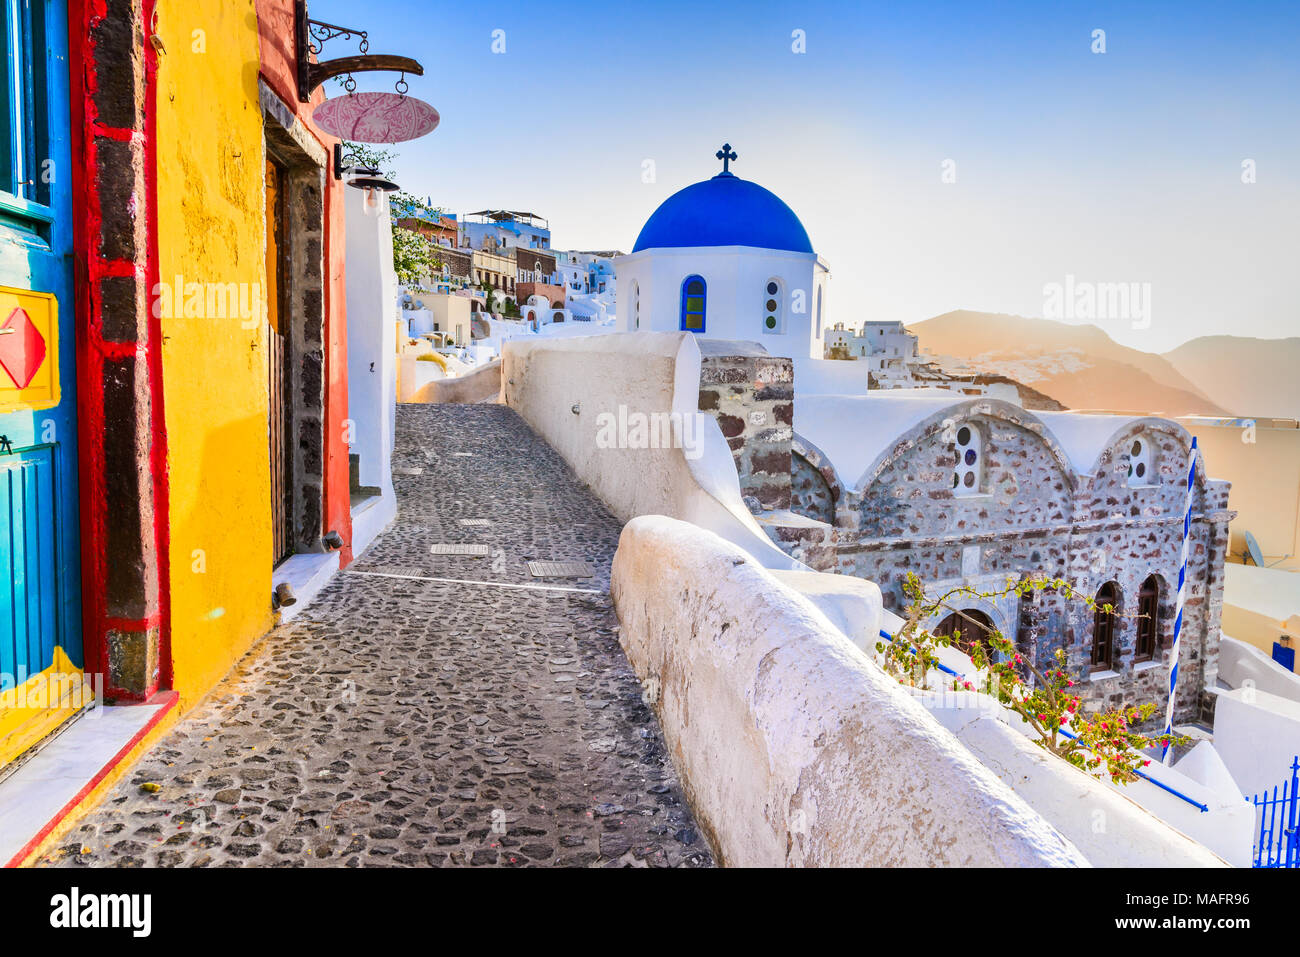 Santorini, Grecia. Oia, pueblo blanco con estrechos caminos adoquinados, famosa atracción de griego de las islas Cícladas, del mar Egeo. Foto de stock